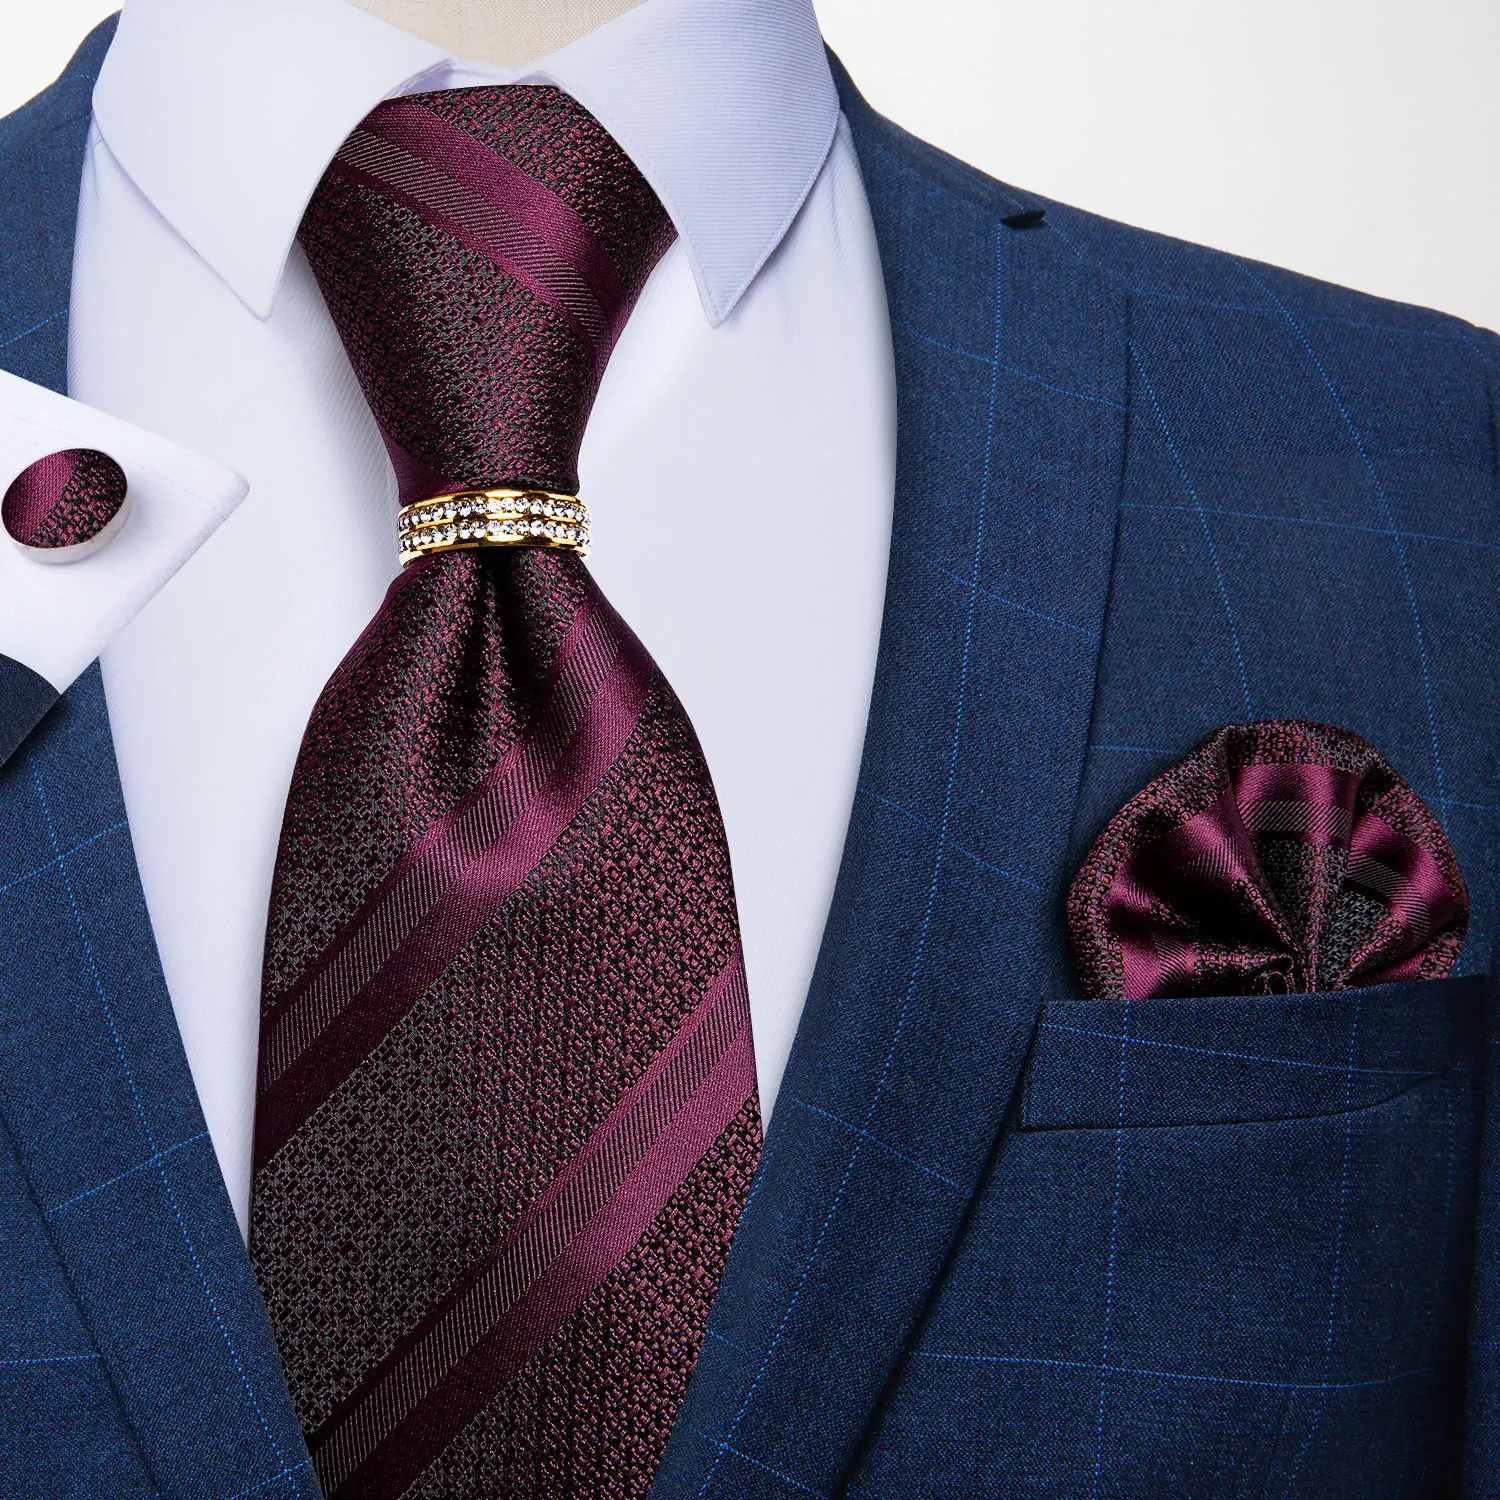 

Fashion Men's Tie 8cm Silk Necktie With Ring Pocket Square Cufflinks Set Wedding Party Tie Formal Business Neckties DiBanGu